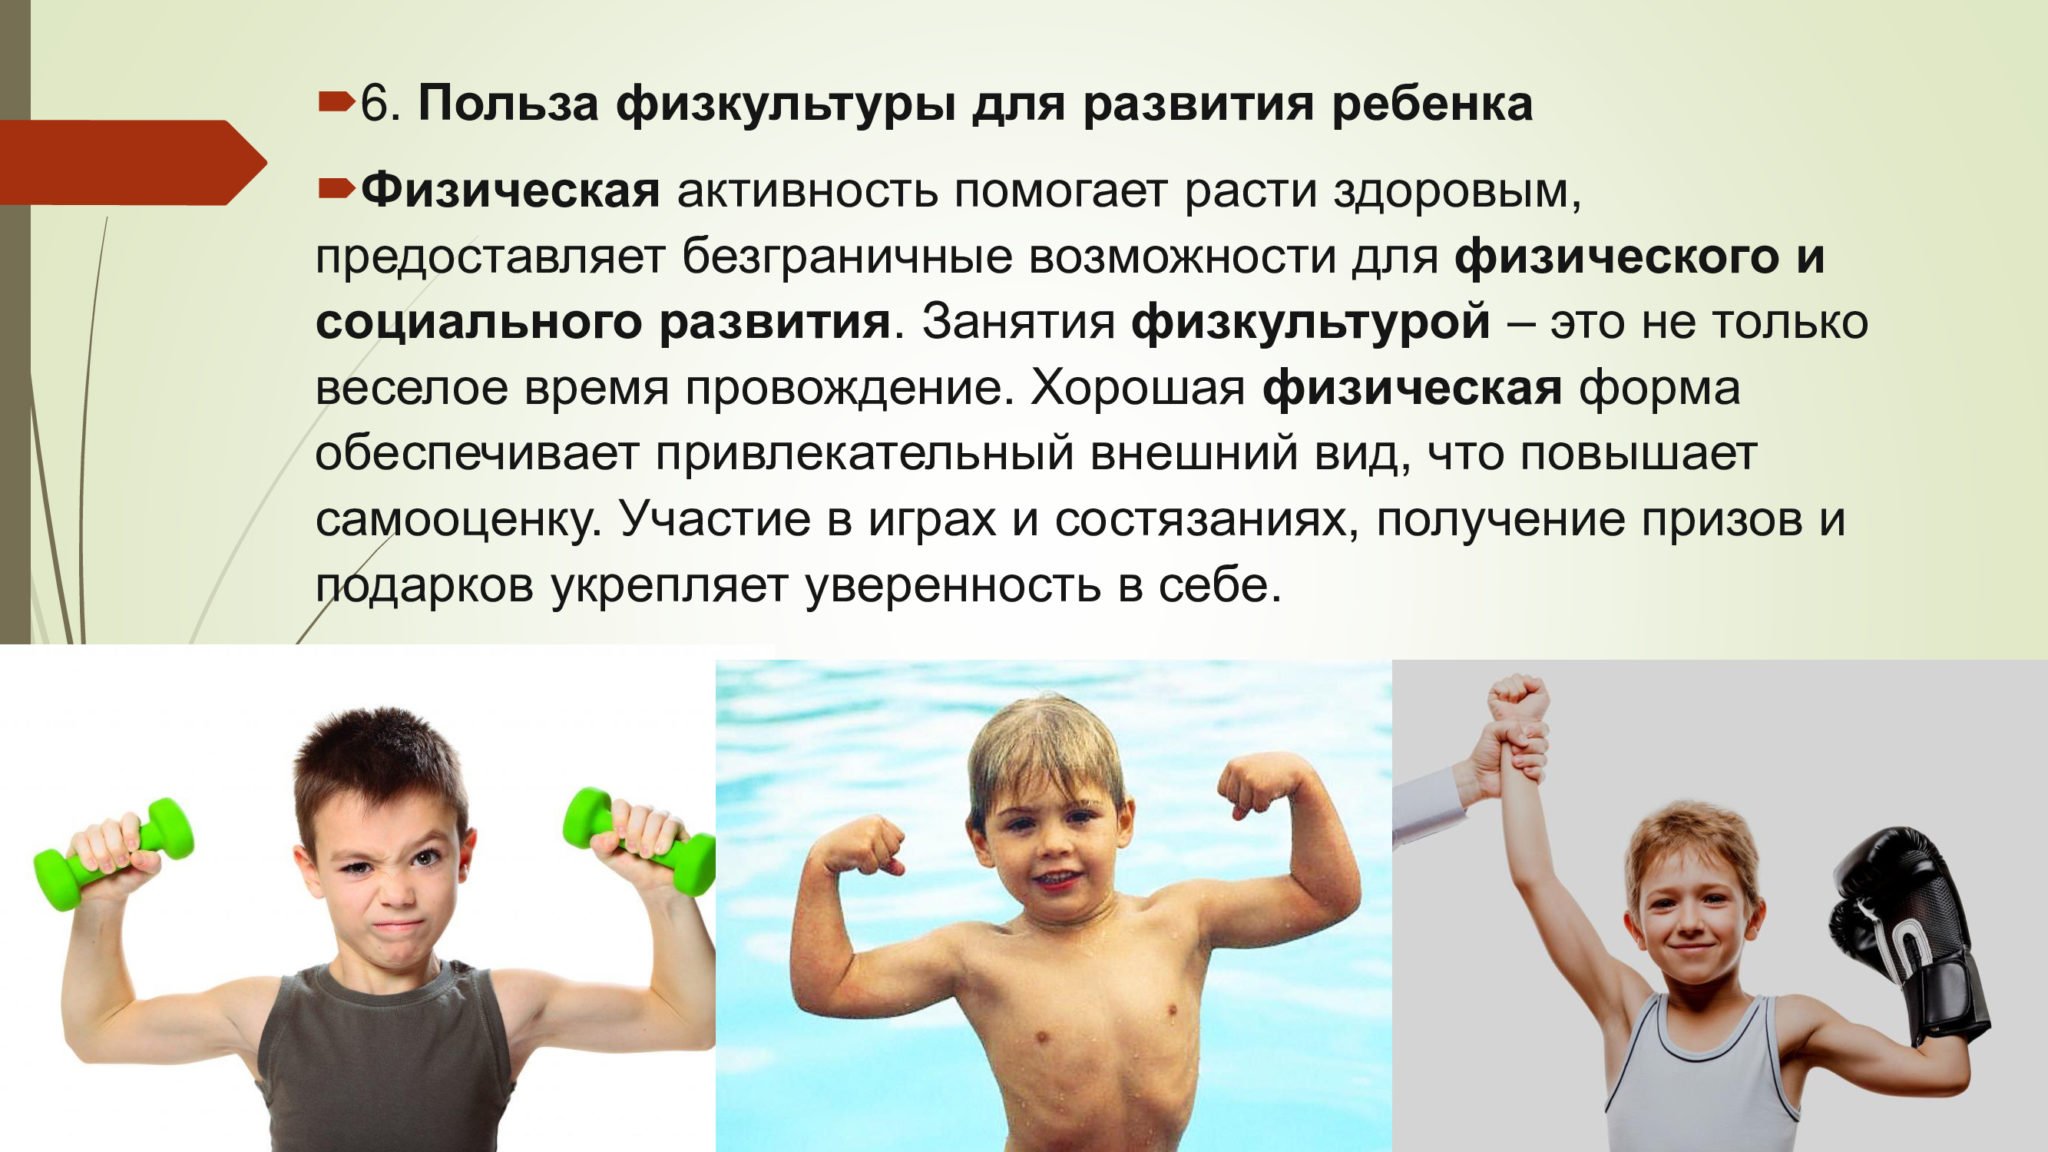 Спорт дает познание. Польза физкультуры. Польза физкультуры для детей. Занятия спортом полезны для здоровья. Занимающихся физической культурой и спортом.